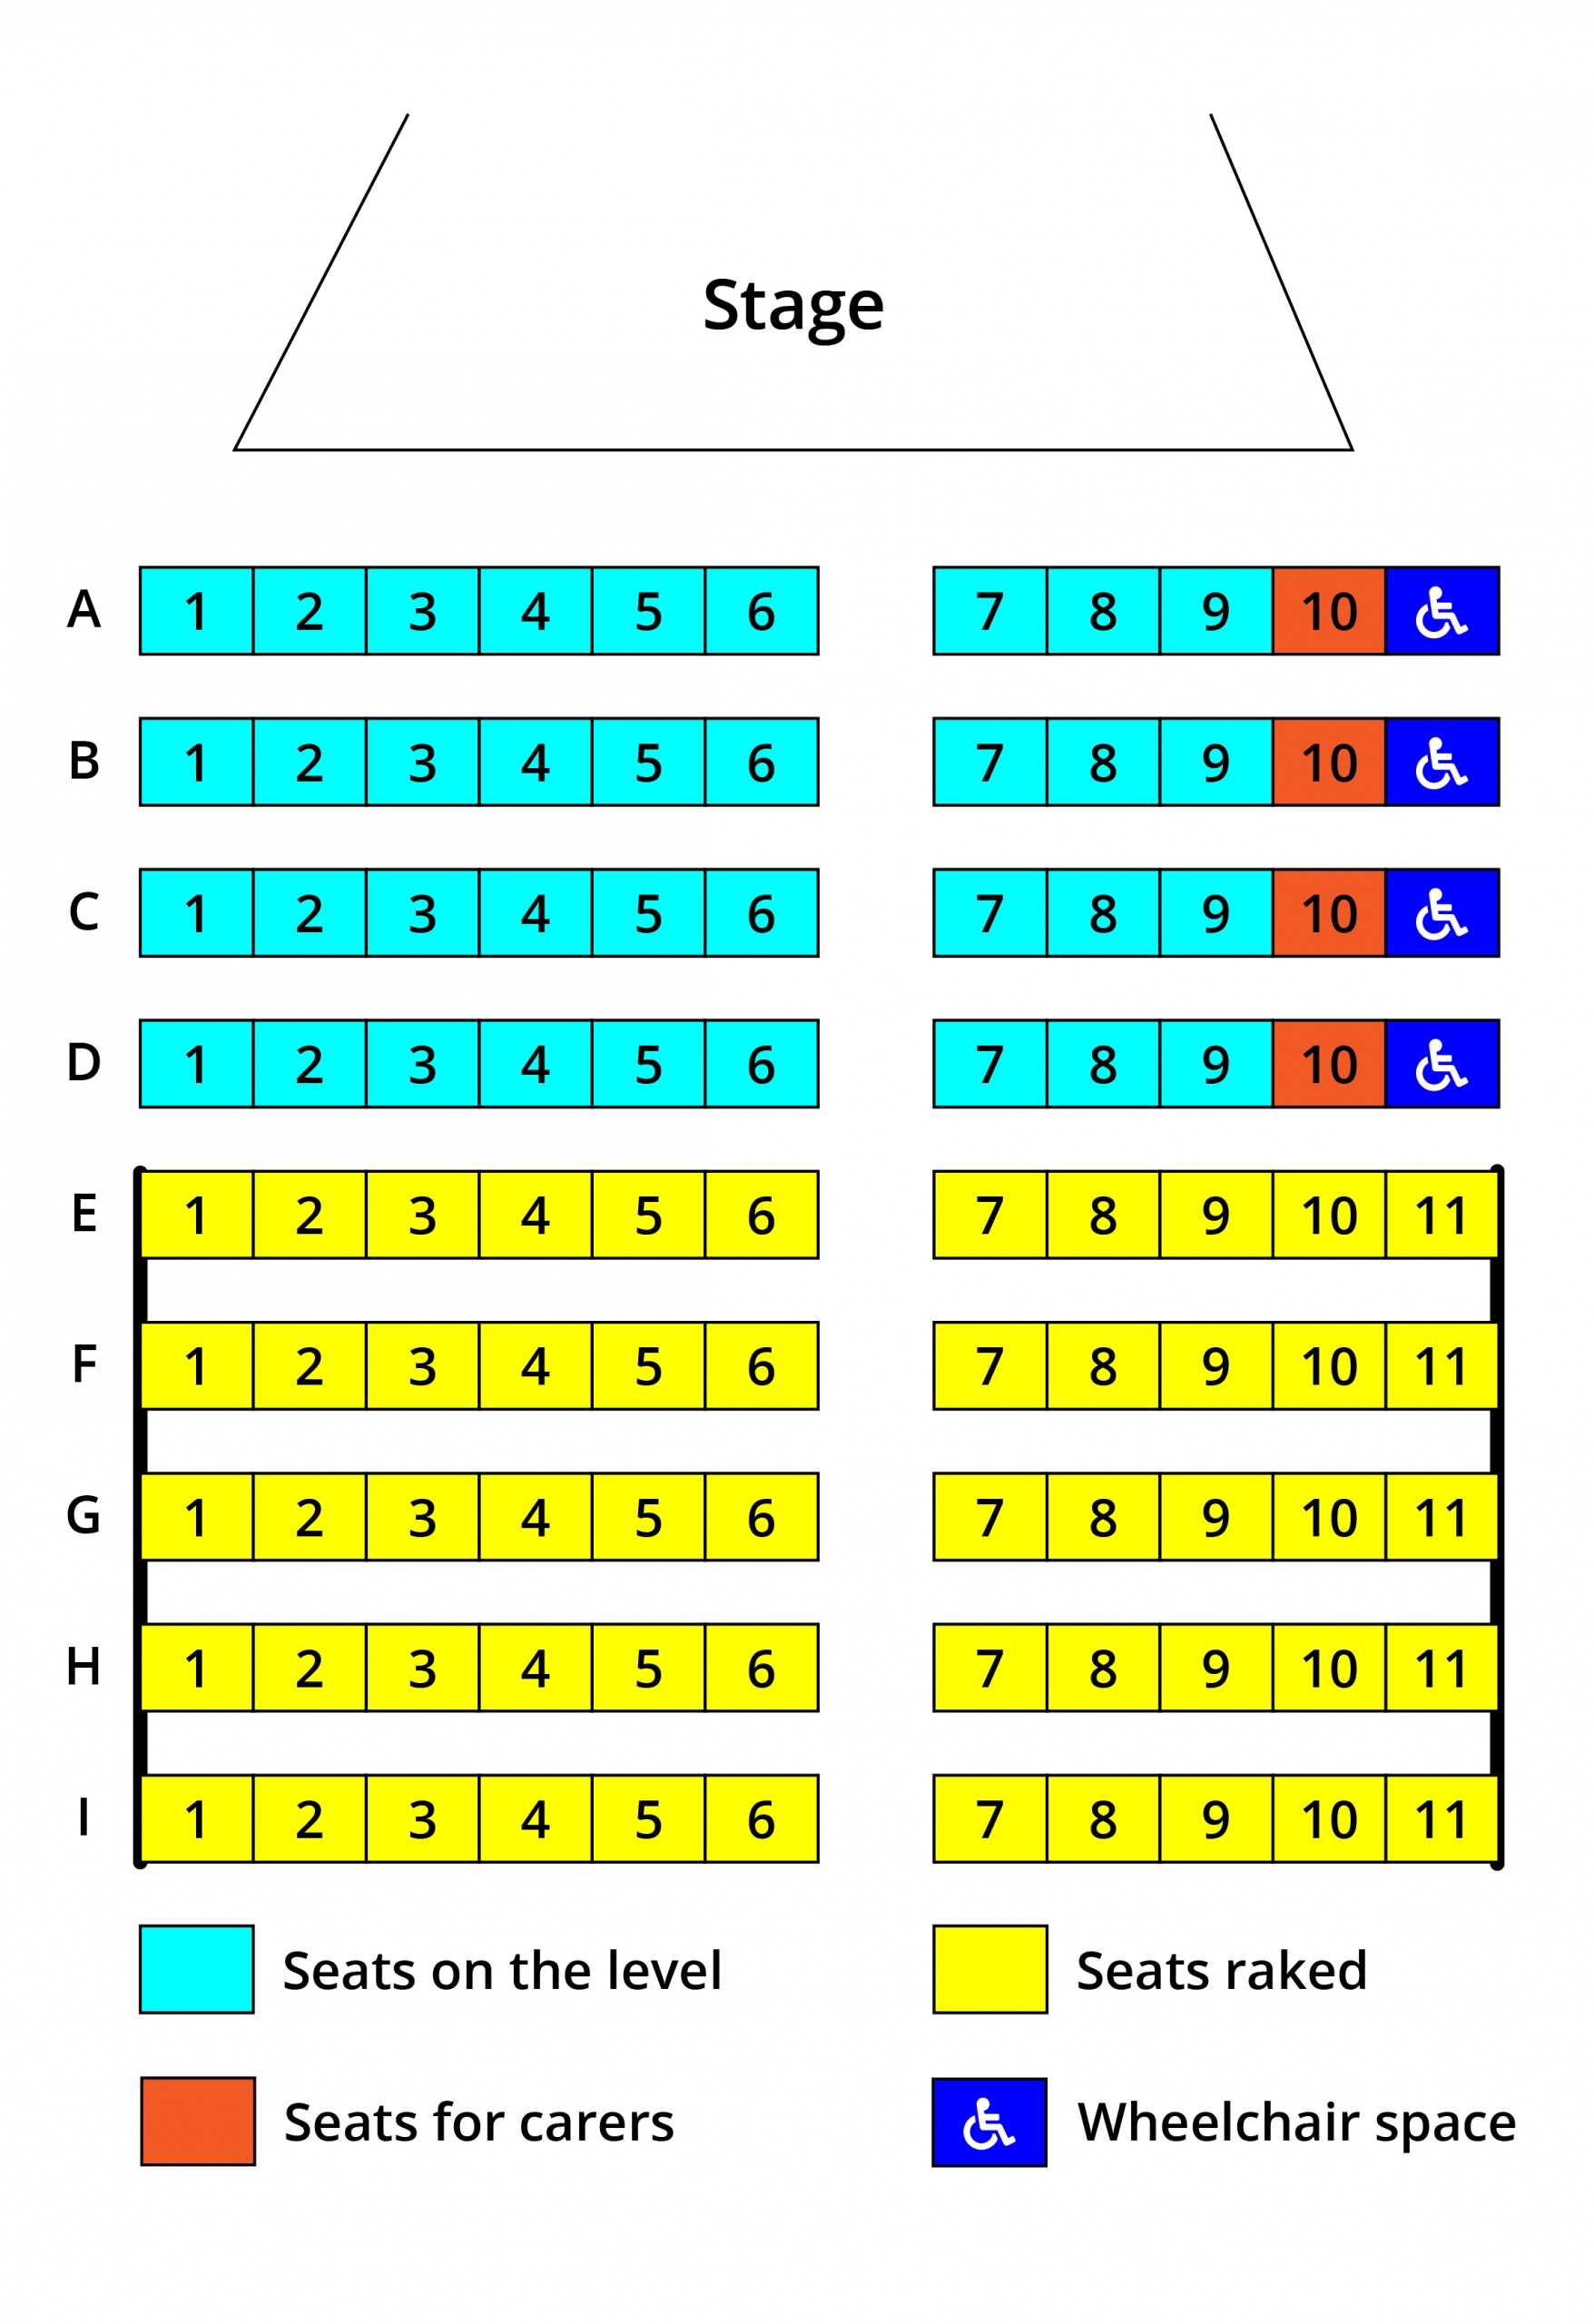 Theatre seating plan